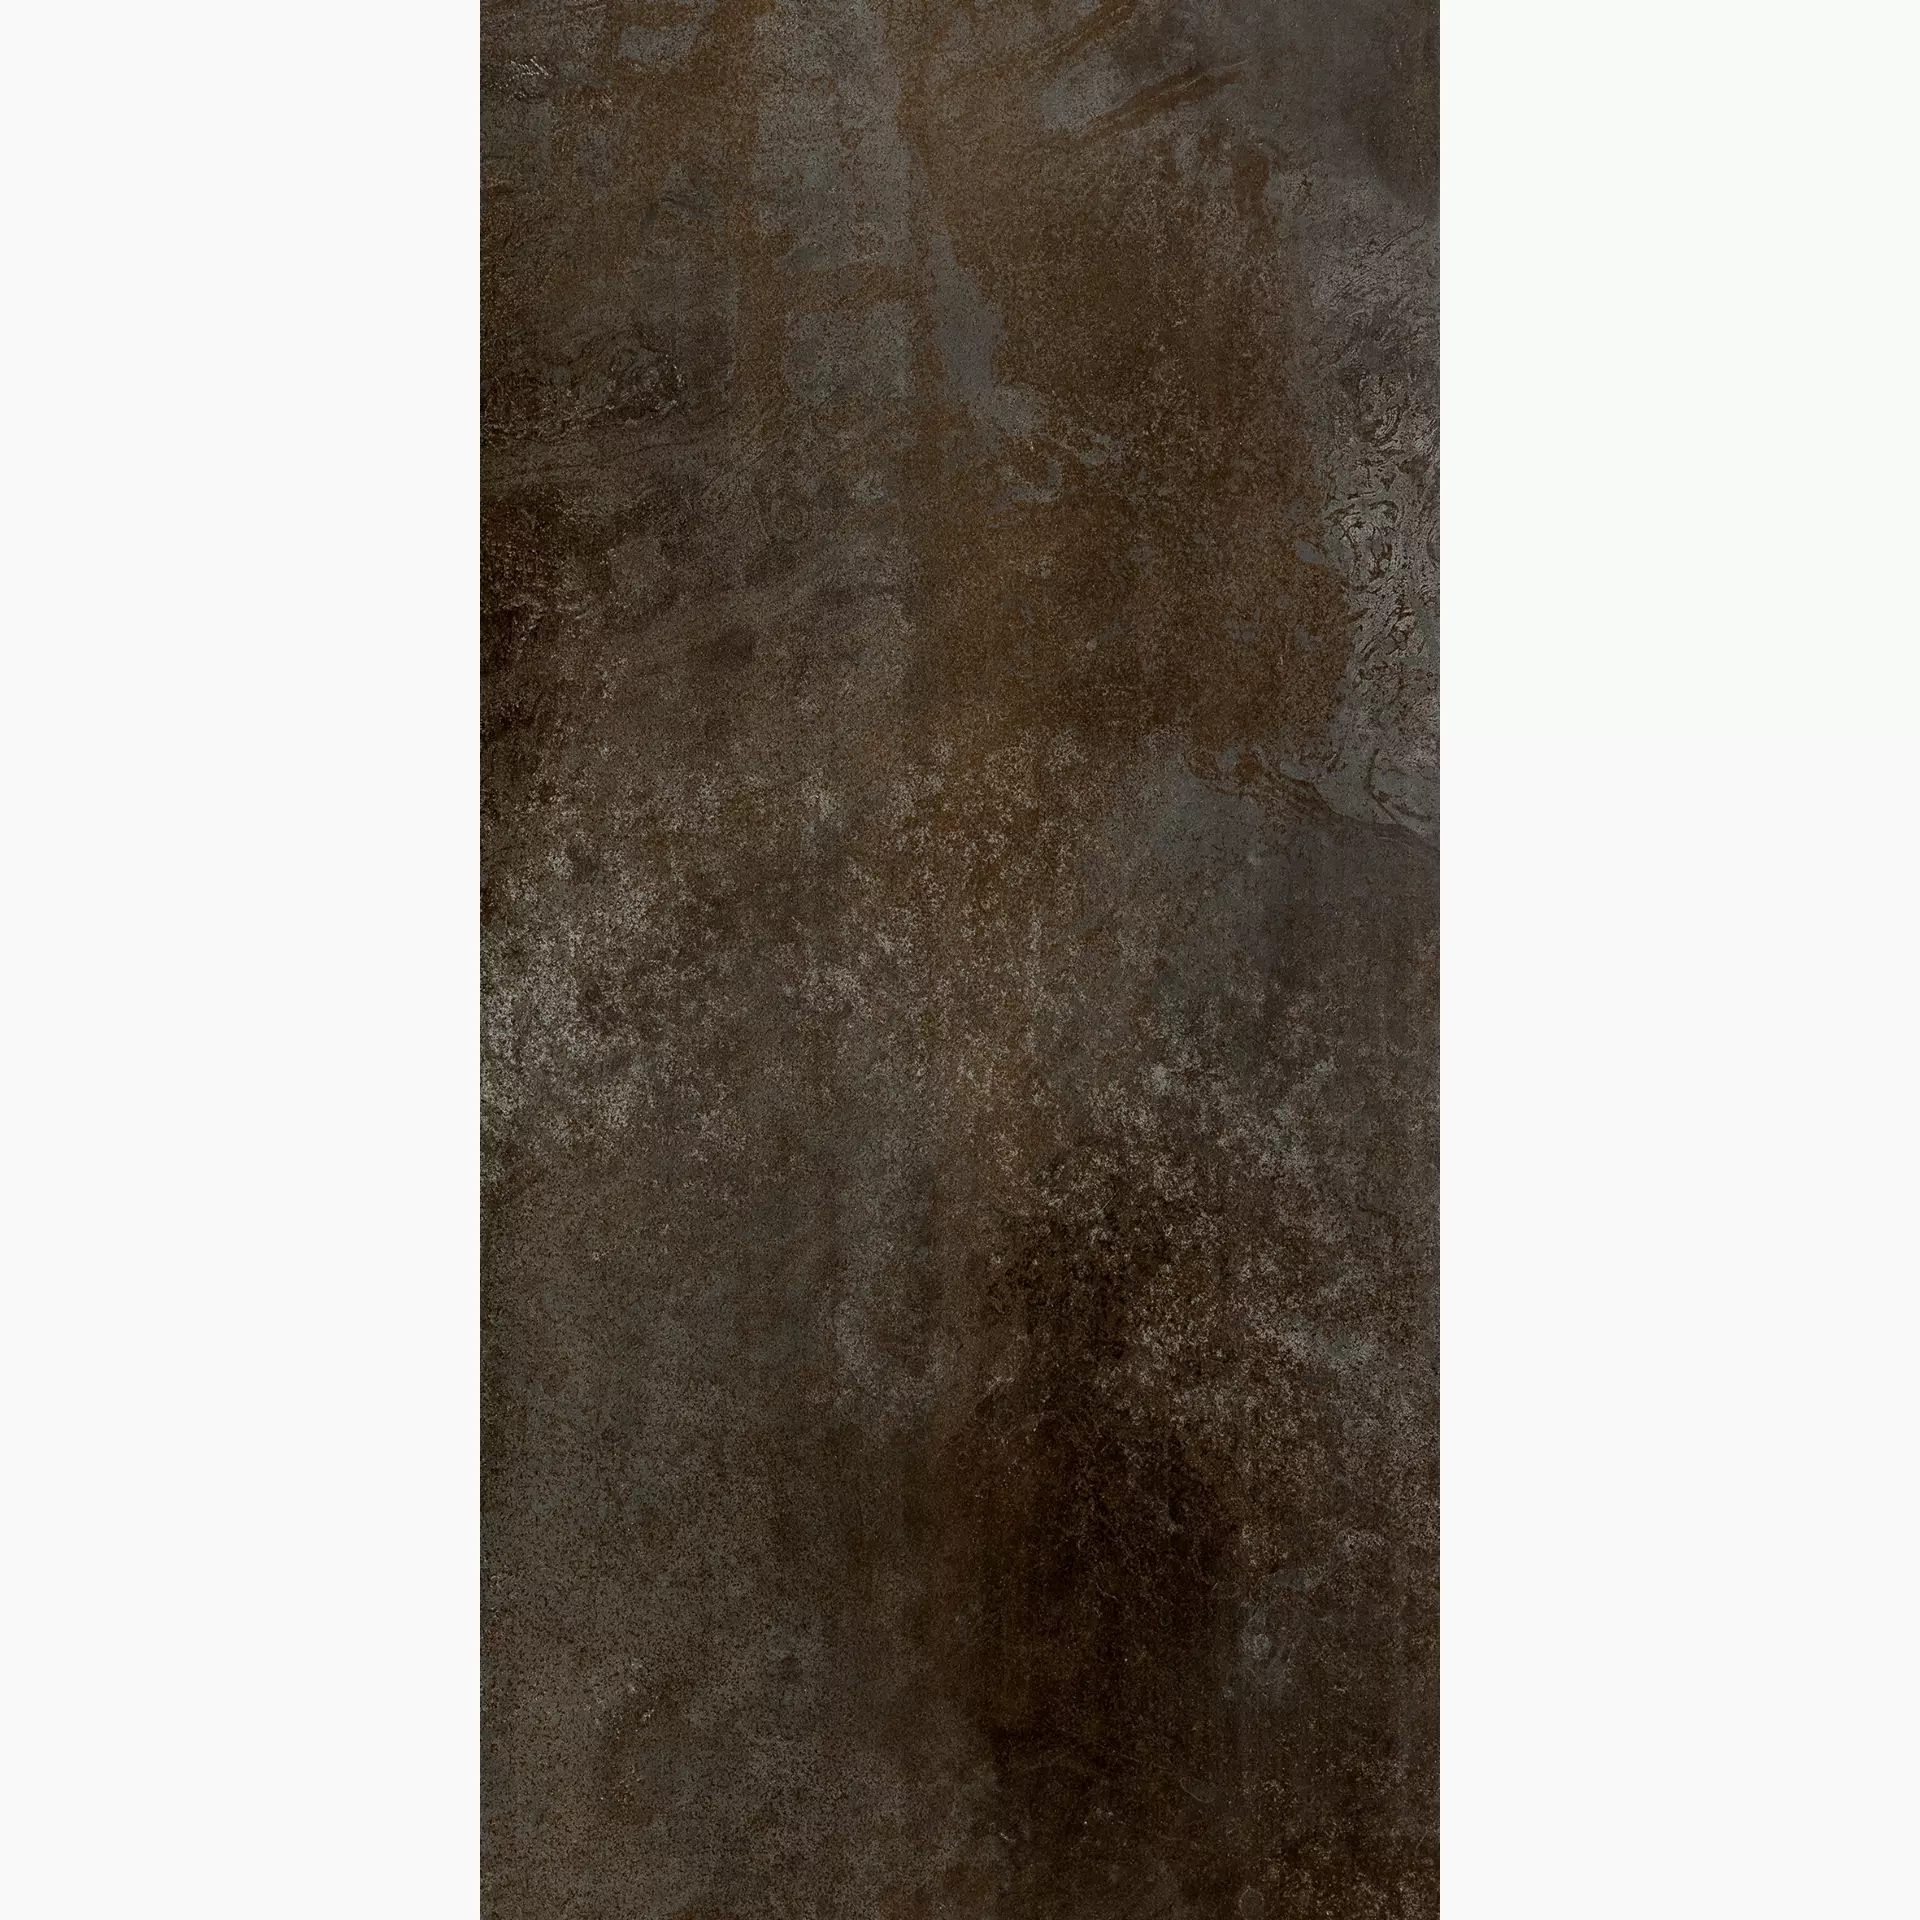 Florim Flowtech Aged Bronze Naturale – Matt Aged Bronze 757071 matt natur 60x120cm rektifiziert 9mm